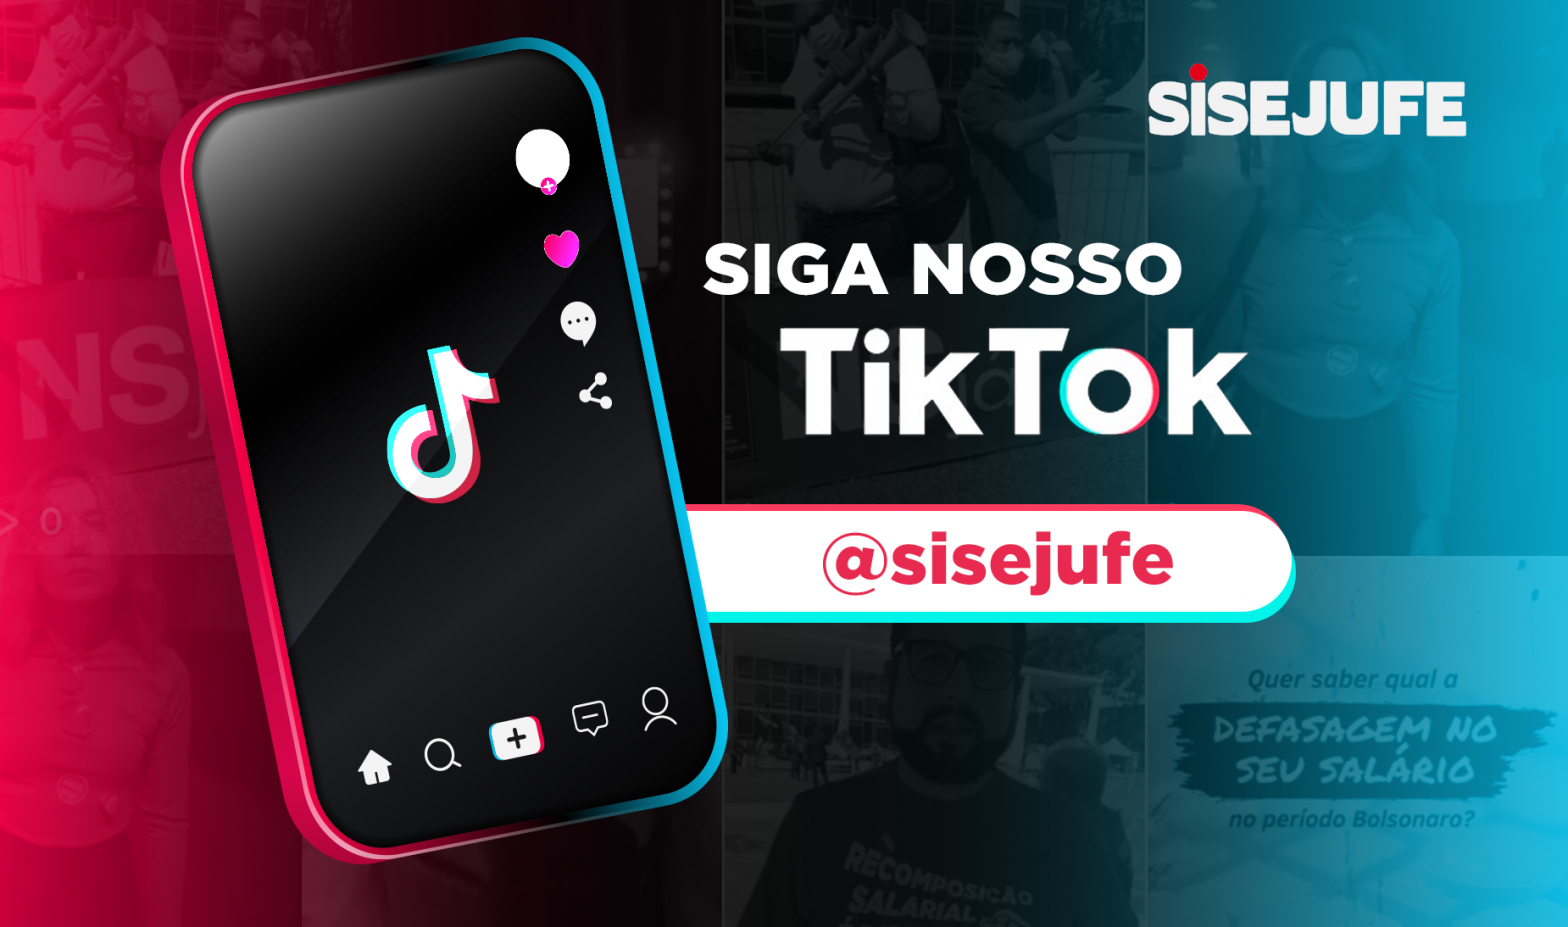 Sisejufe lança canal do Tik Tok para reforçar as lutas da categoria, SISEJUFE